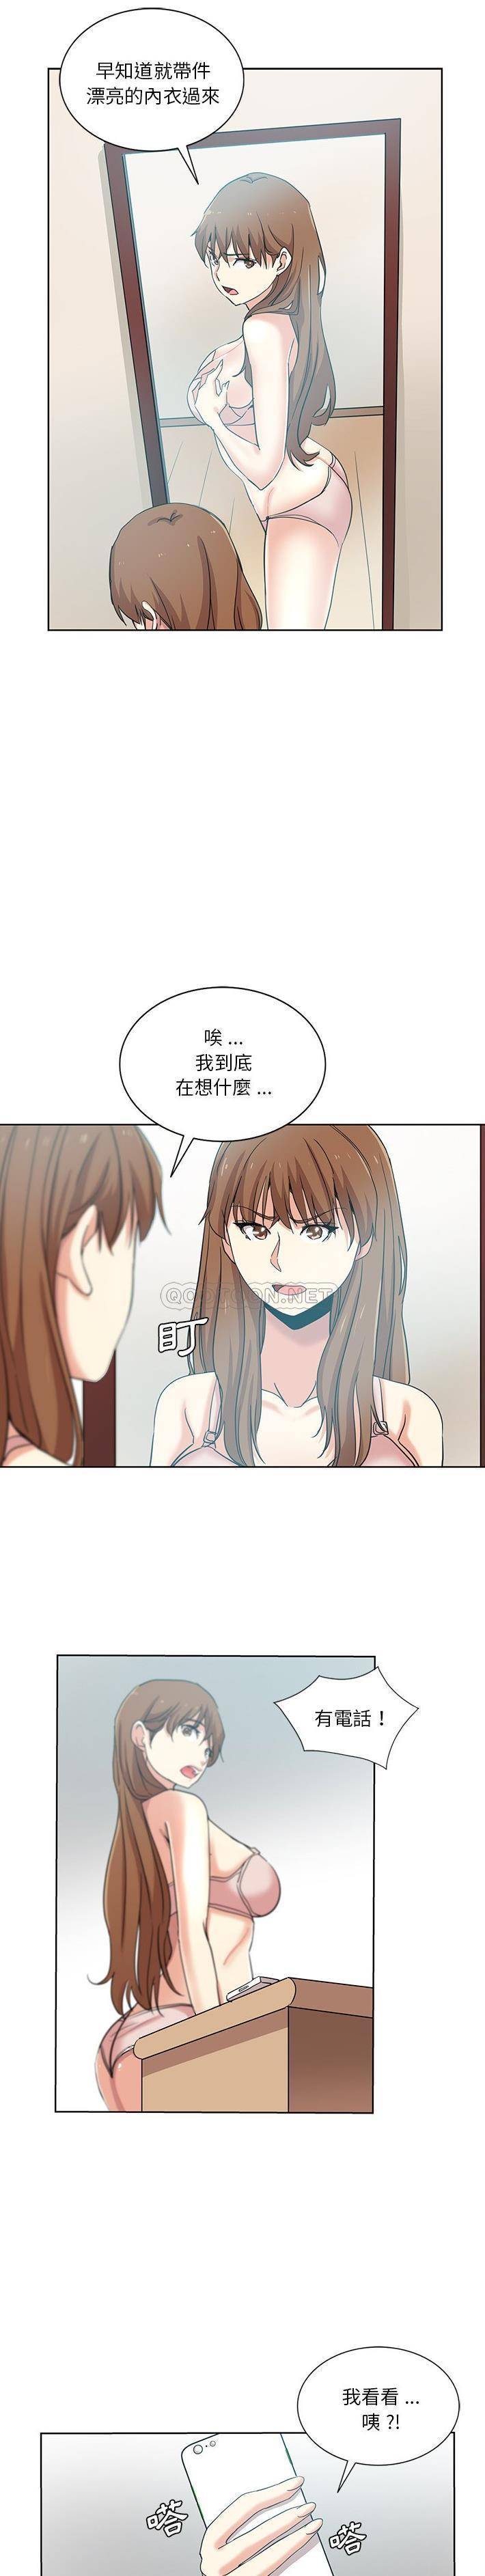 韩国污漫画 危險純友誼 第20话 13